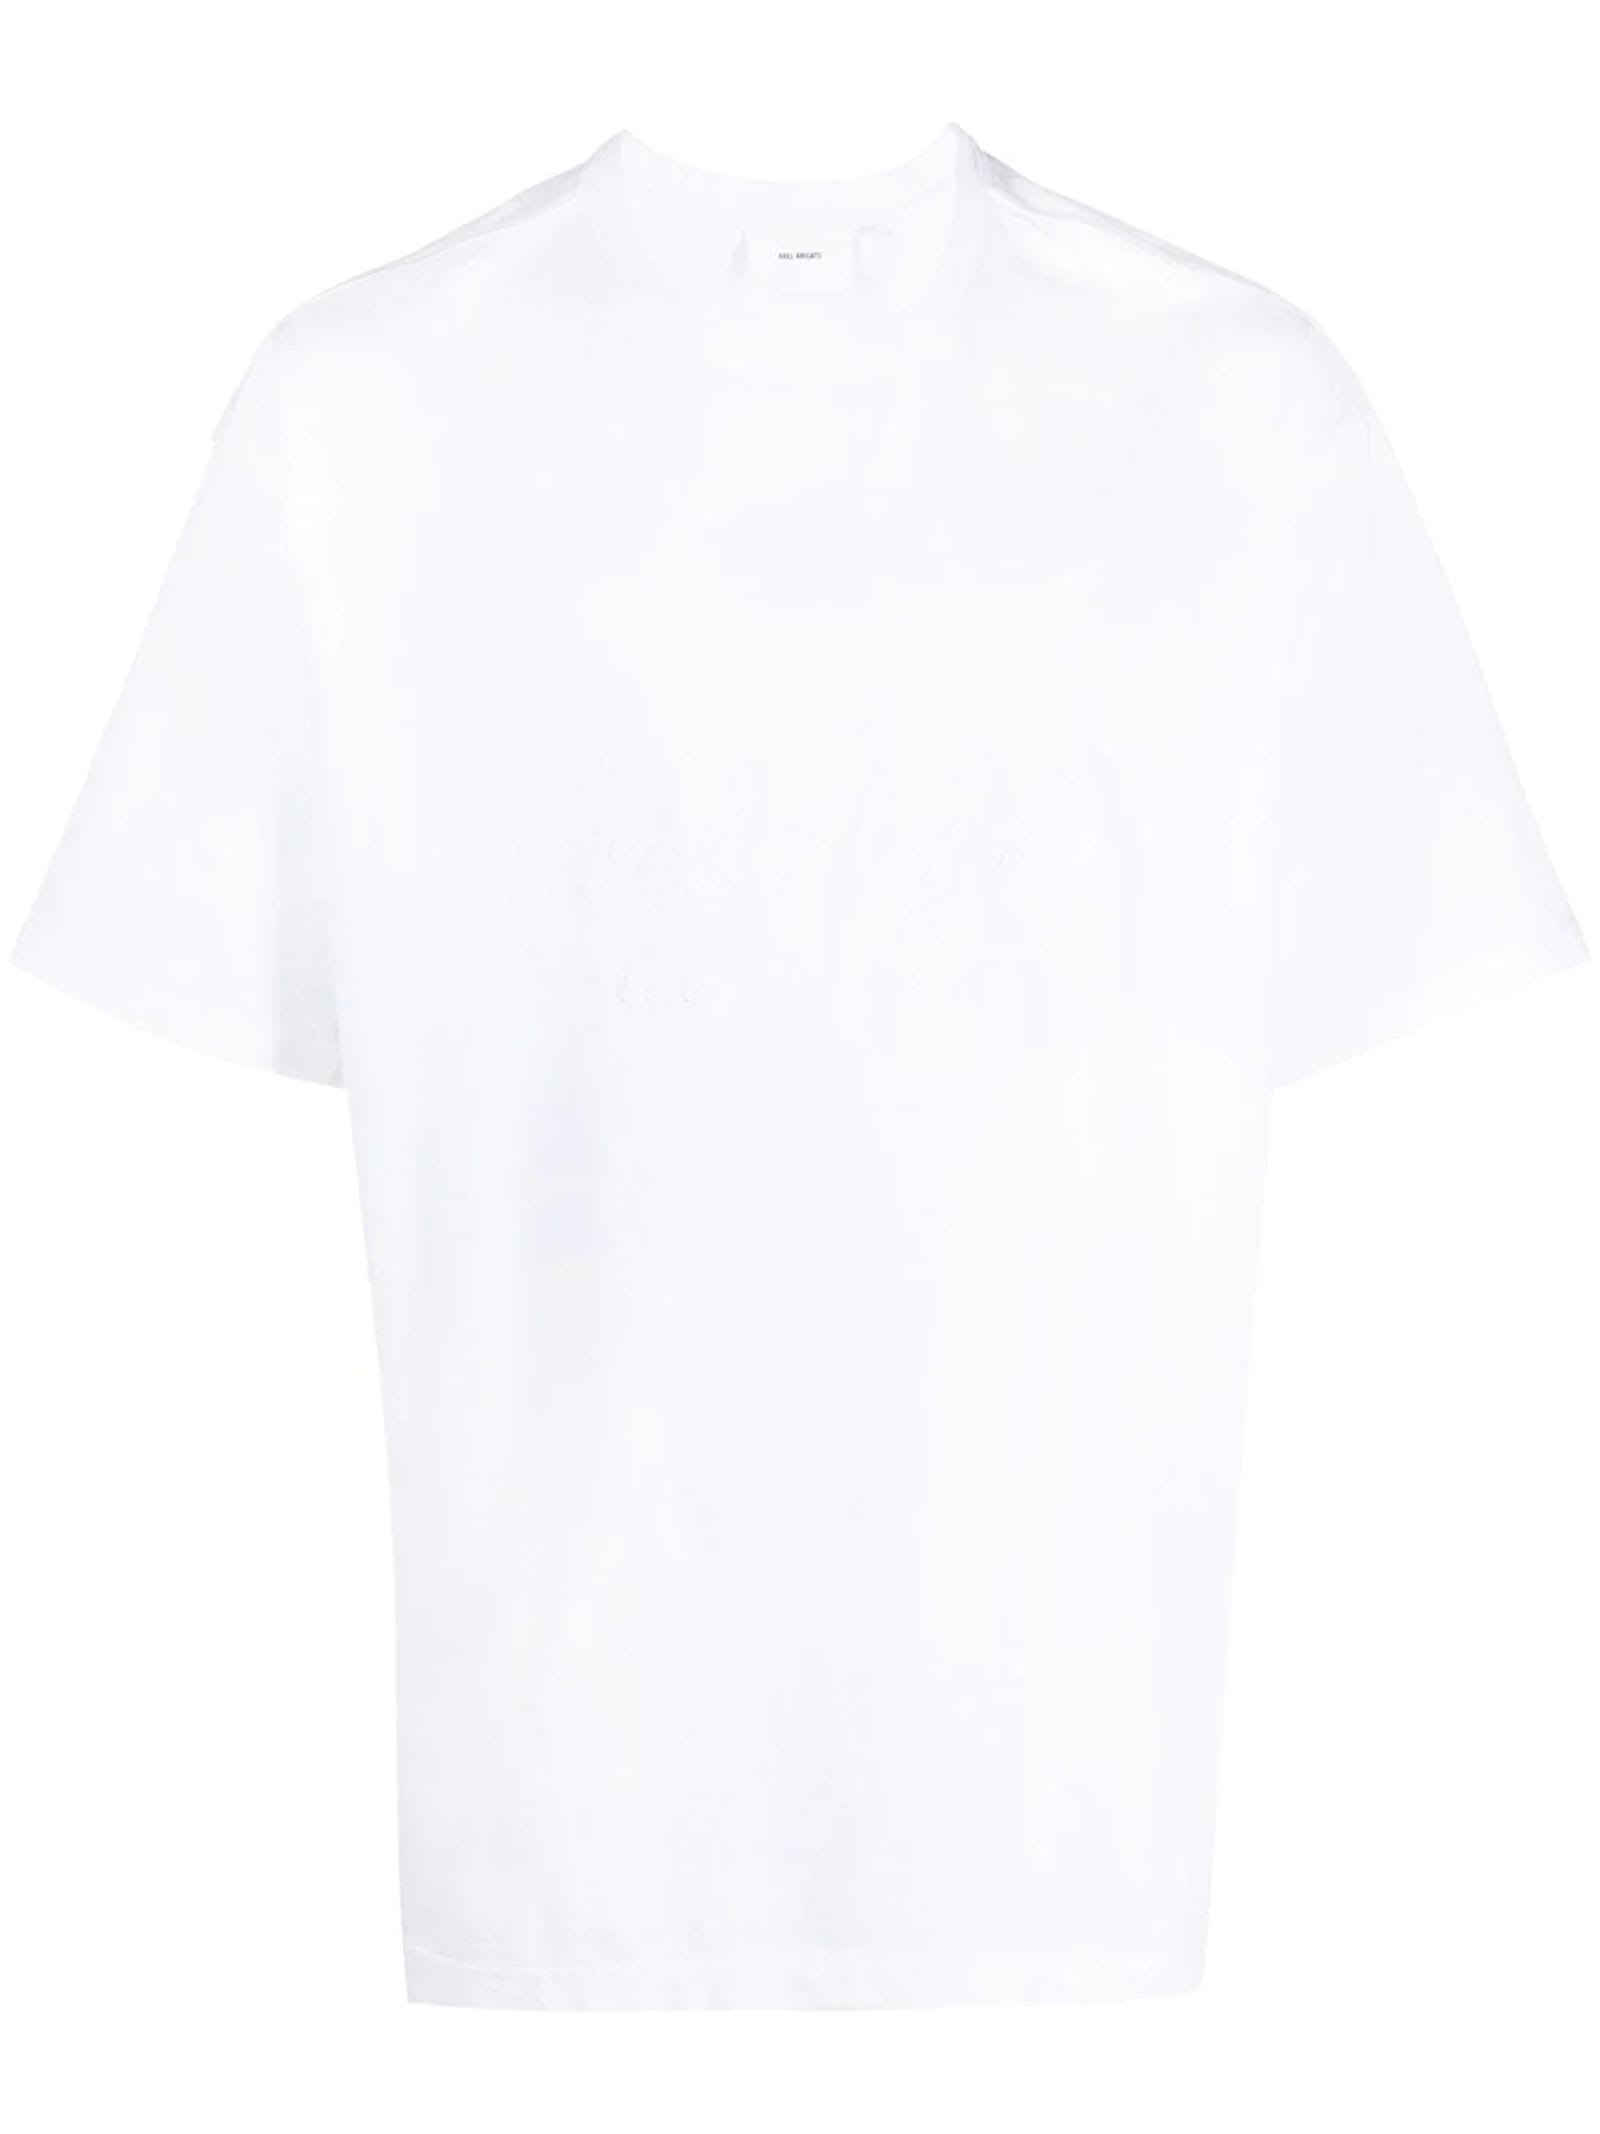 Axel Arigato White Cotton T-shirt